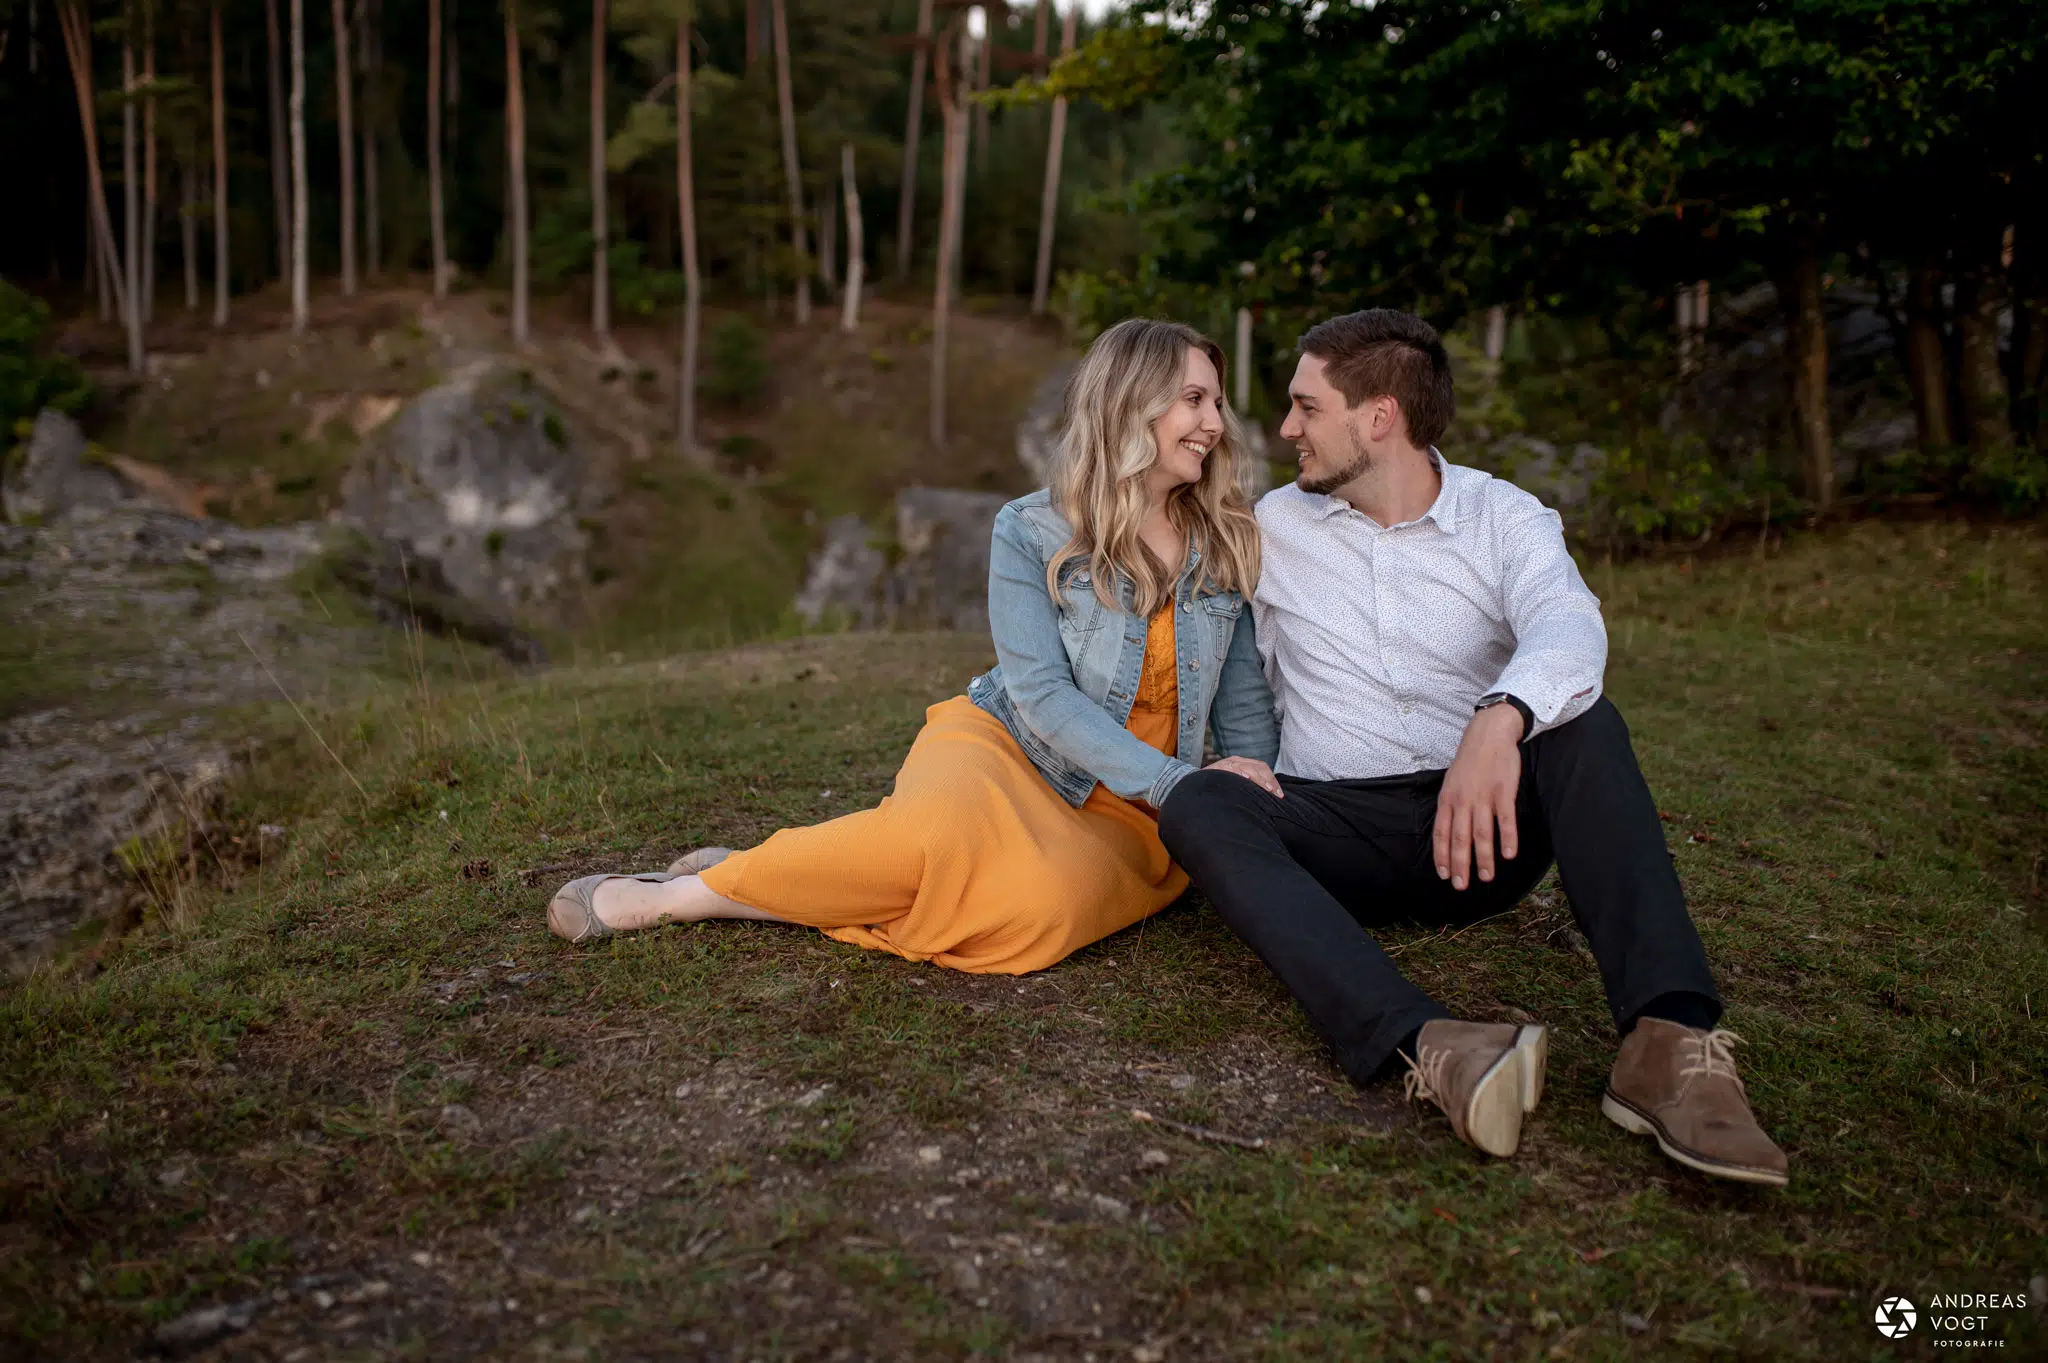 Romantisches Paarfoto mit Lena und Markus - Fotograf Andreas Vogt aus Aalen